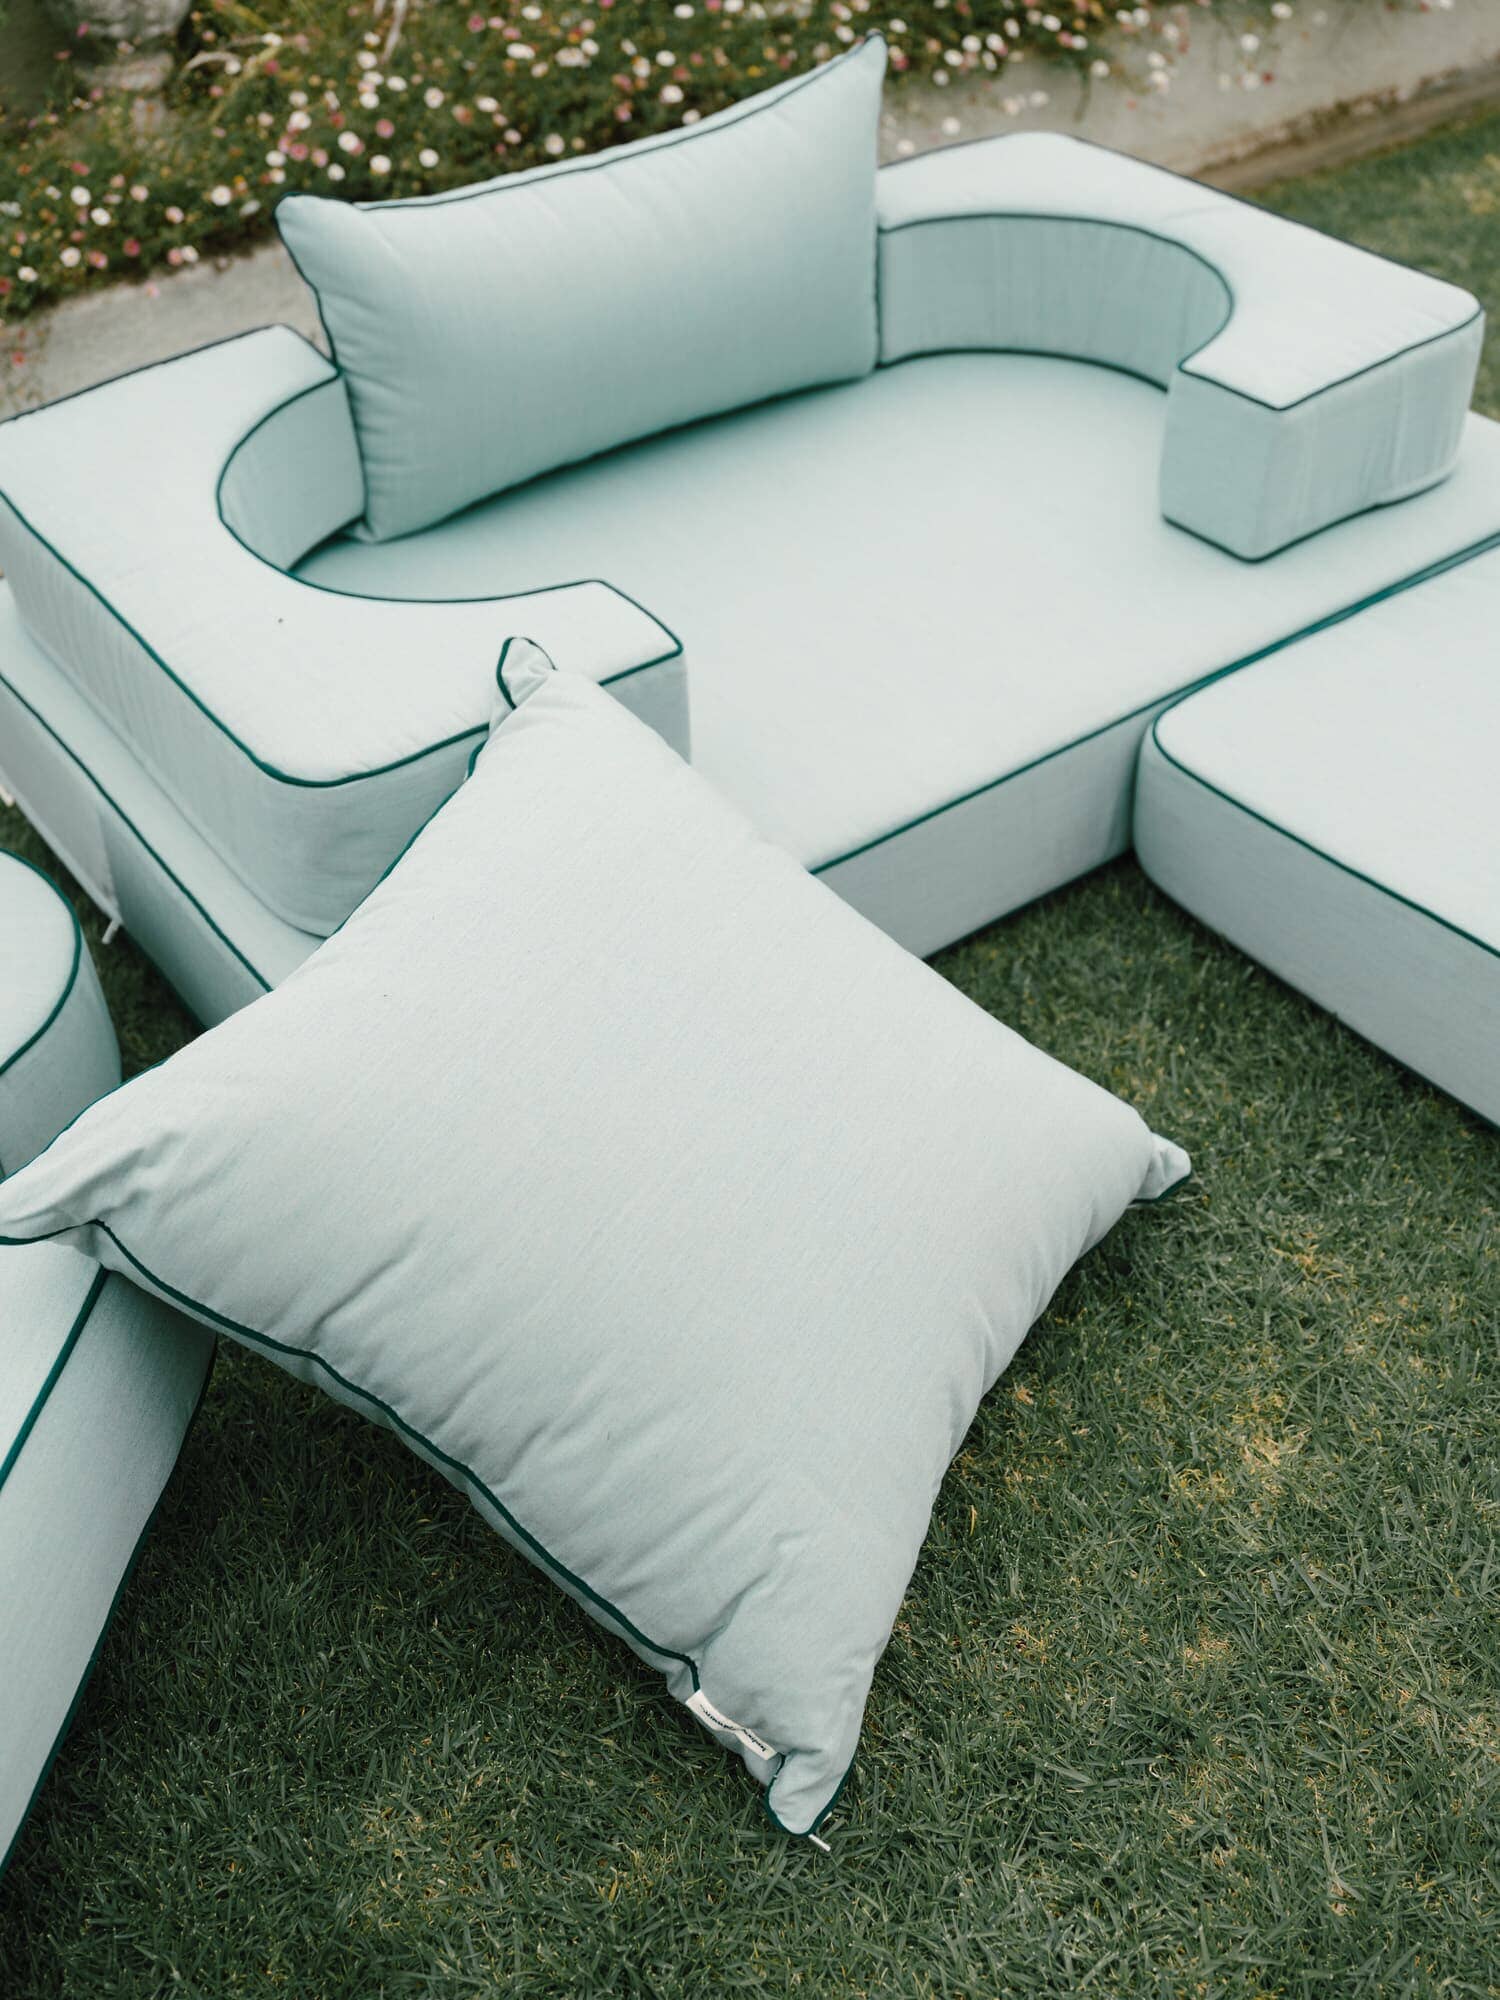 Riviera Green outdoor pillows on grass